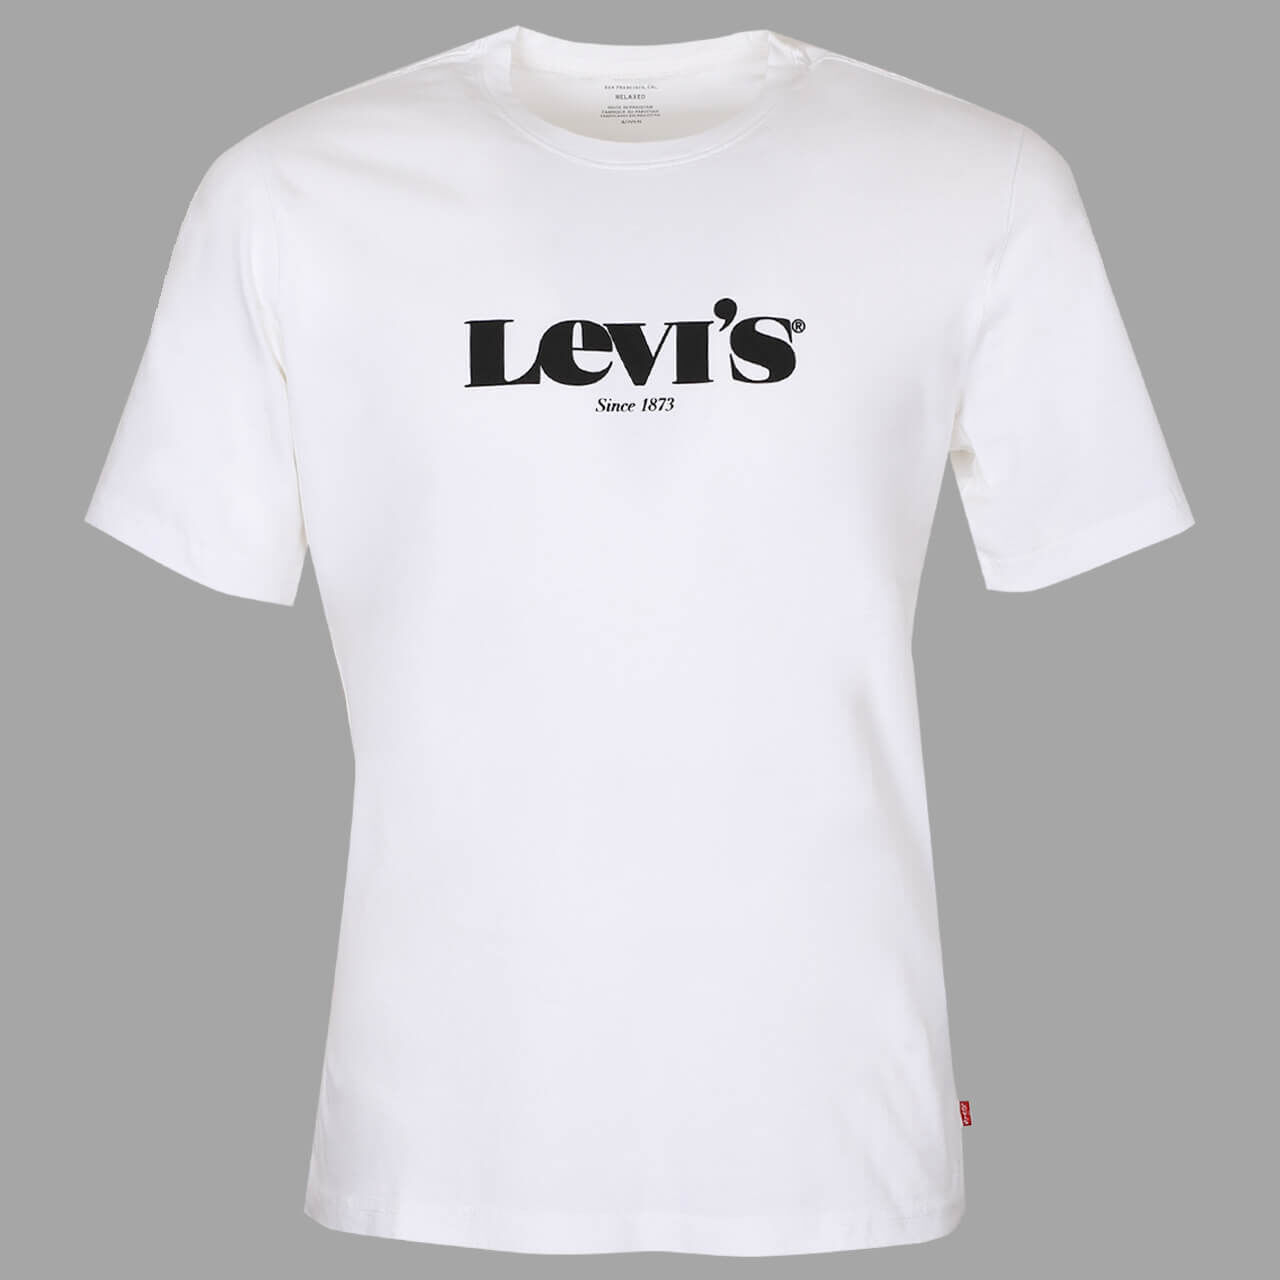 Levis T-Shirt für Herren in Weiß, FarbNr.: 0083